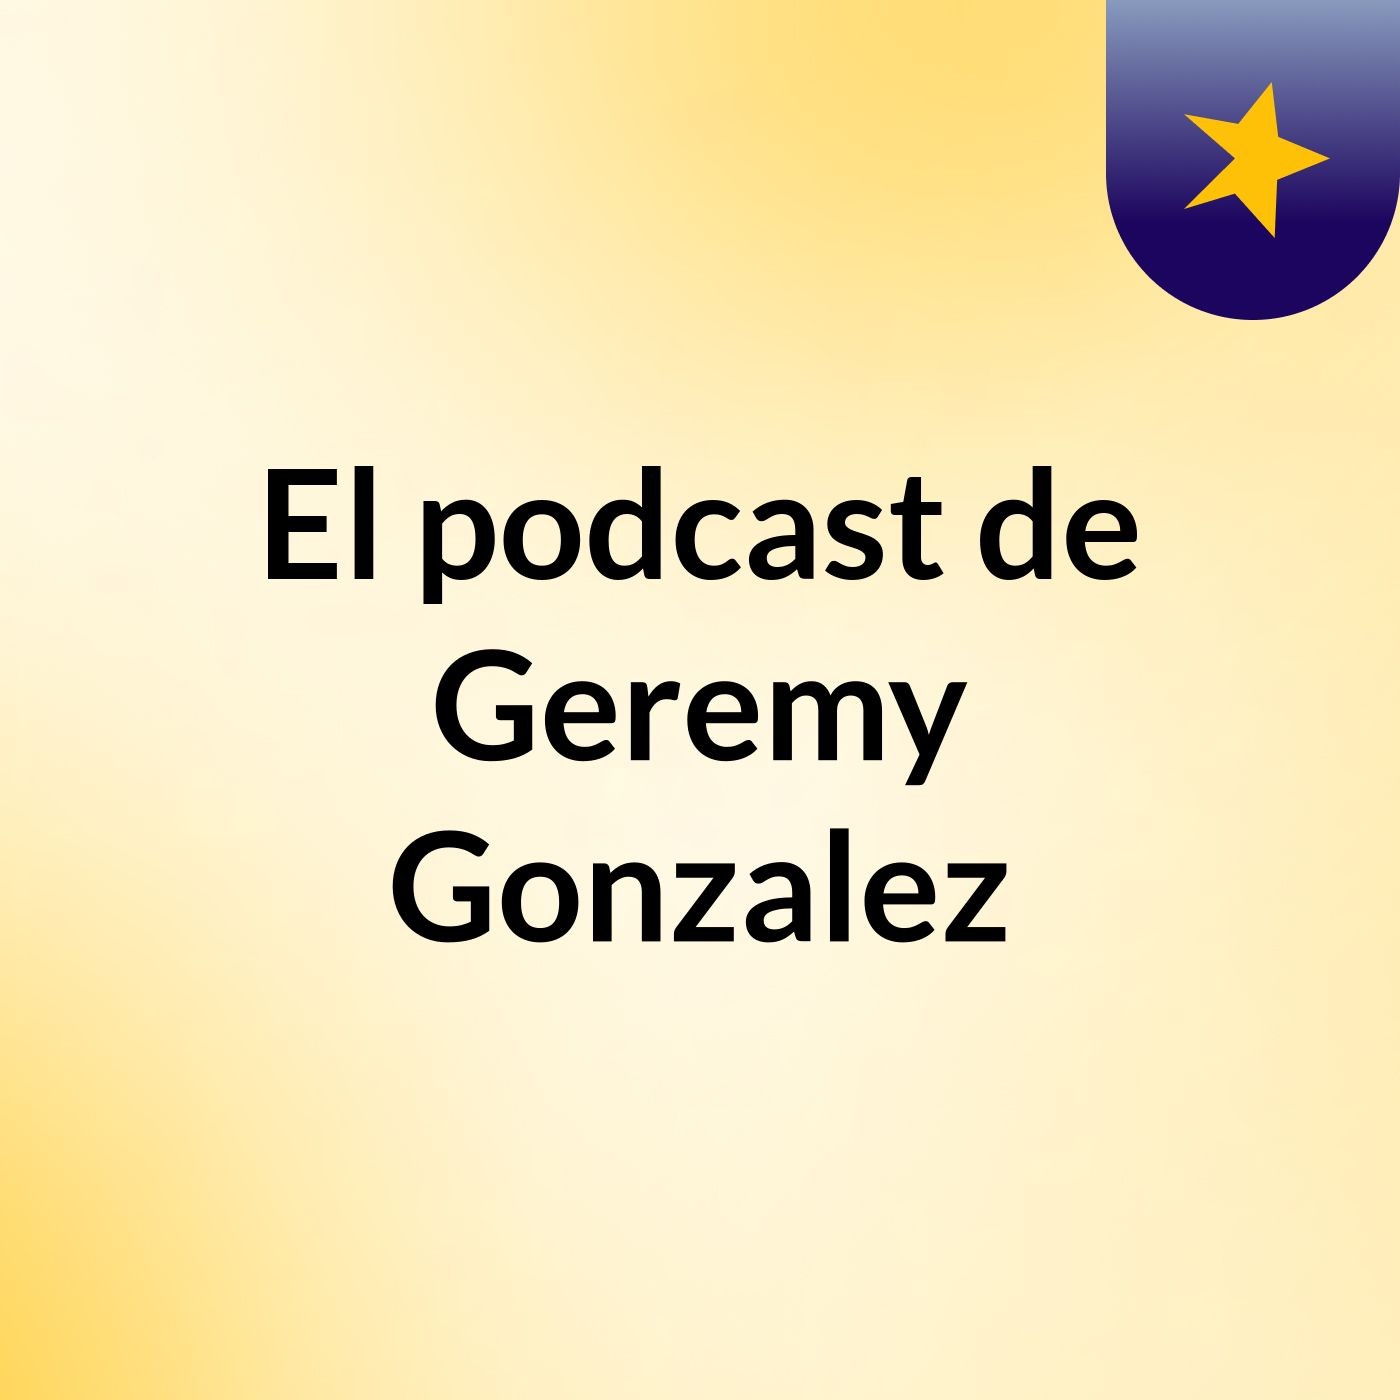 Episodio 2 - El podcast de Geremy Gonzalez